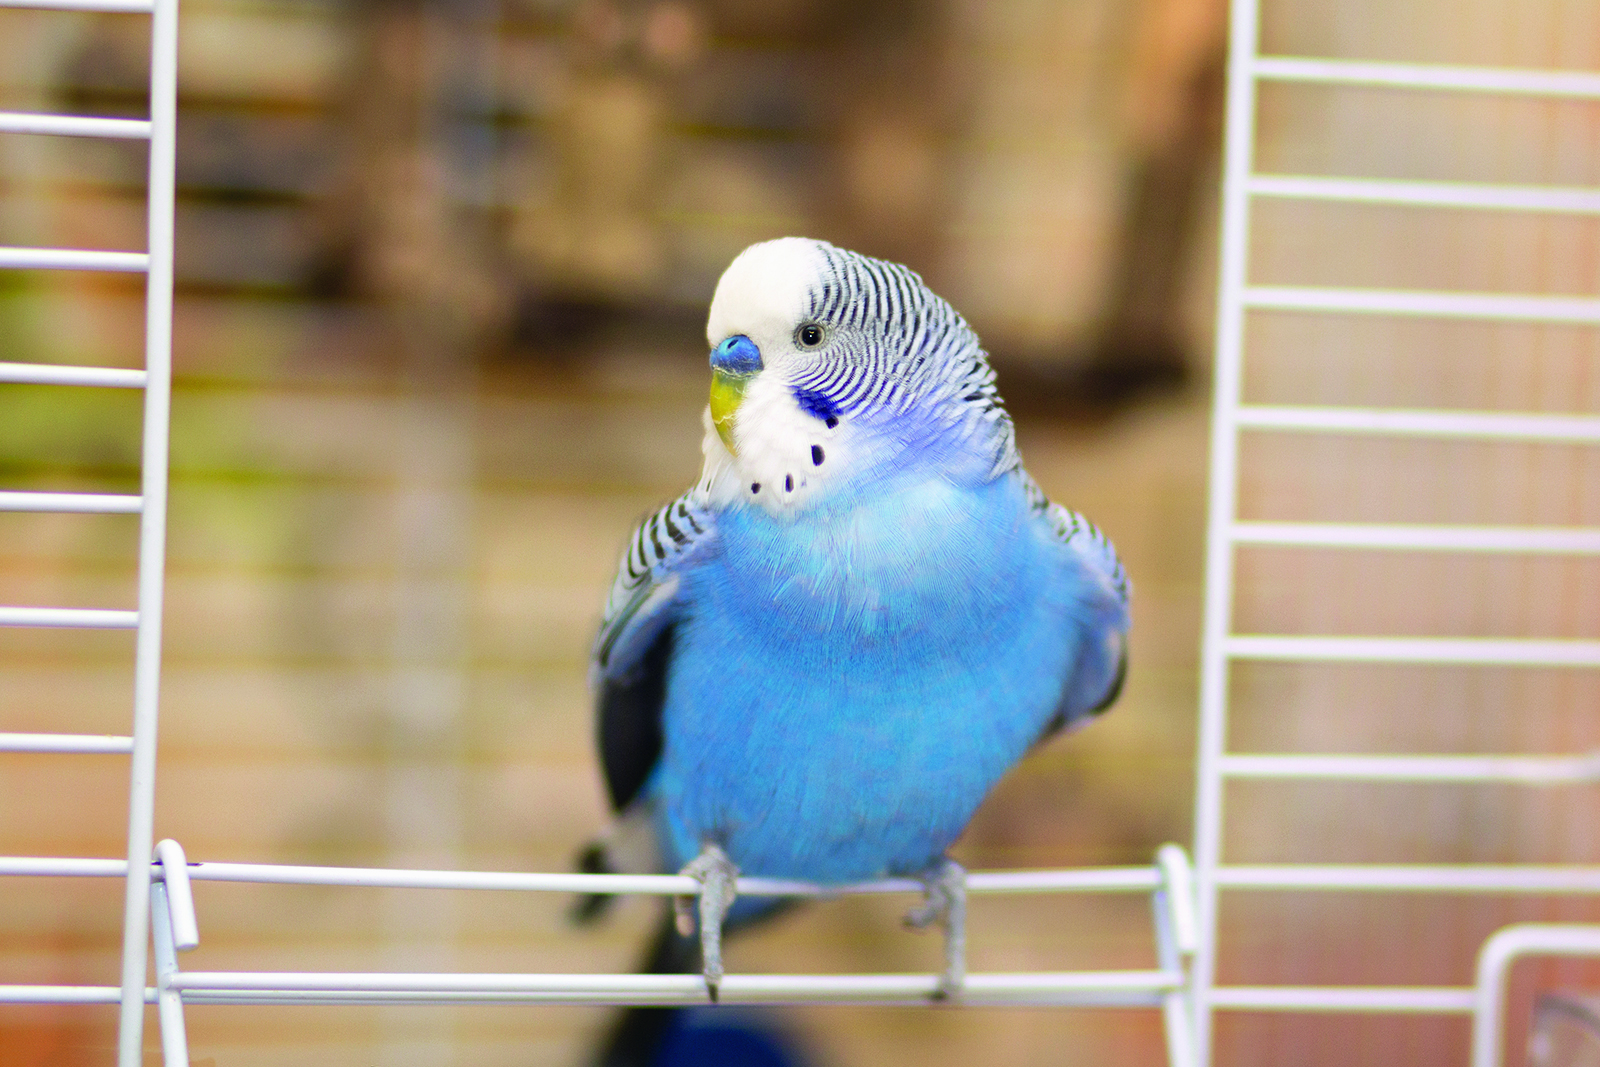 Comment prévenir les intoxications alimentaires chez les oiseaux ?